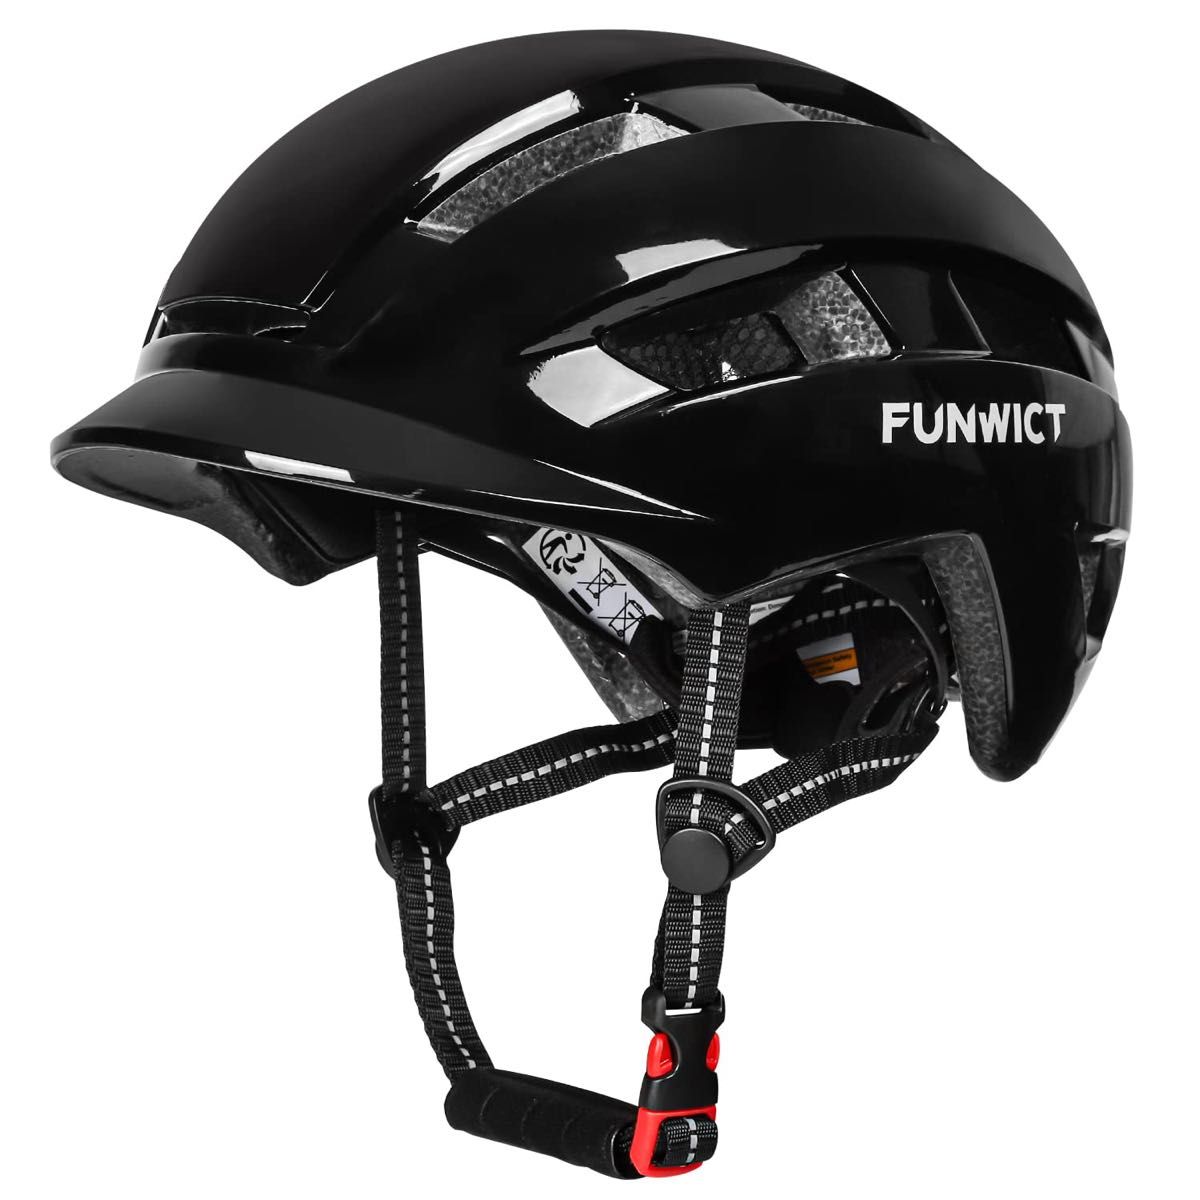 FUNWICT アーバン・シティヘルメット バイザー付 軽量サイクリングヘルメット 大人用 サイズ: M/L(57-62cm)